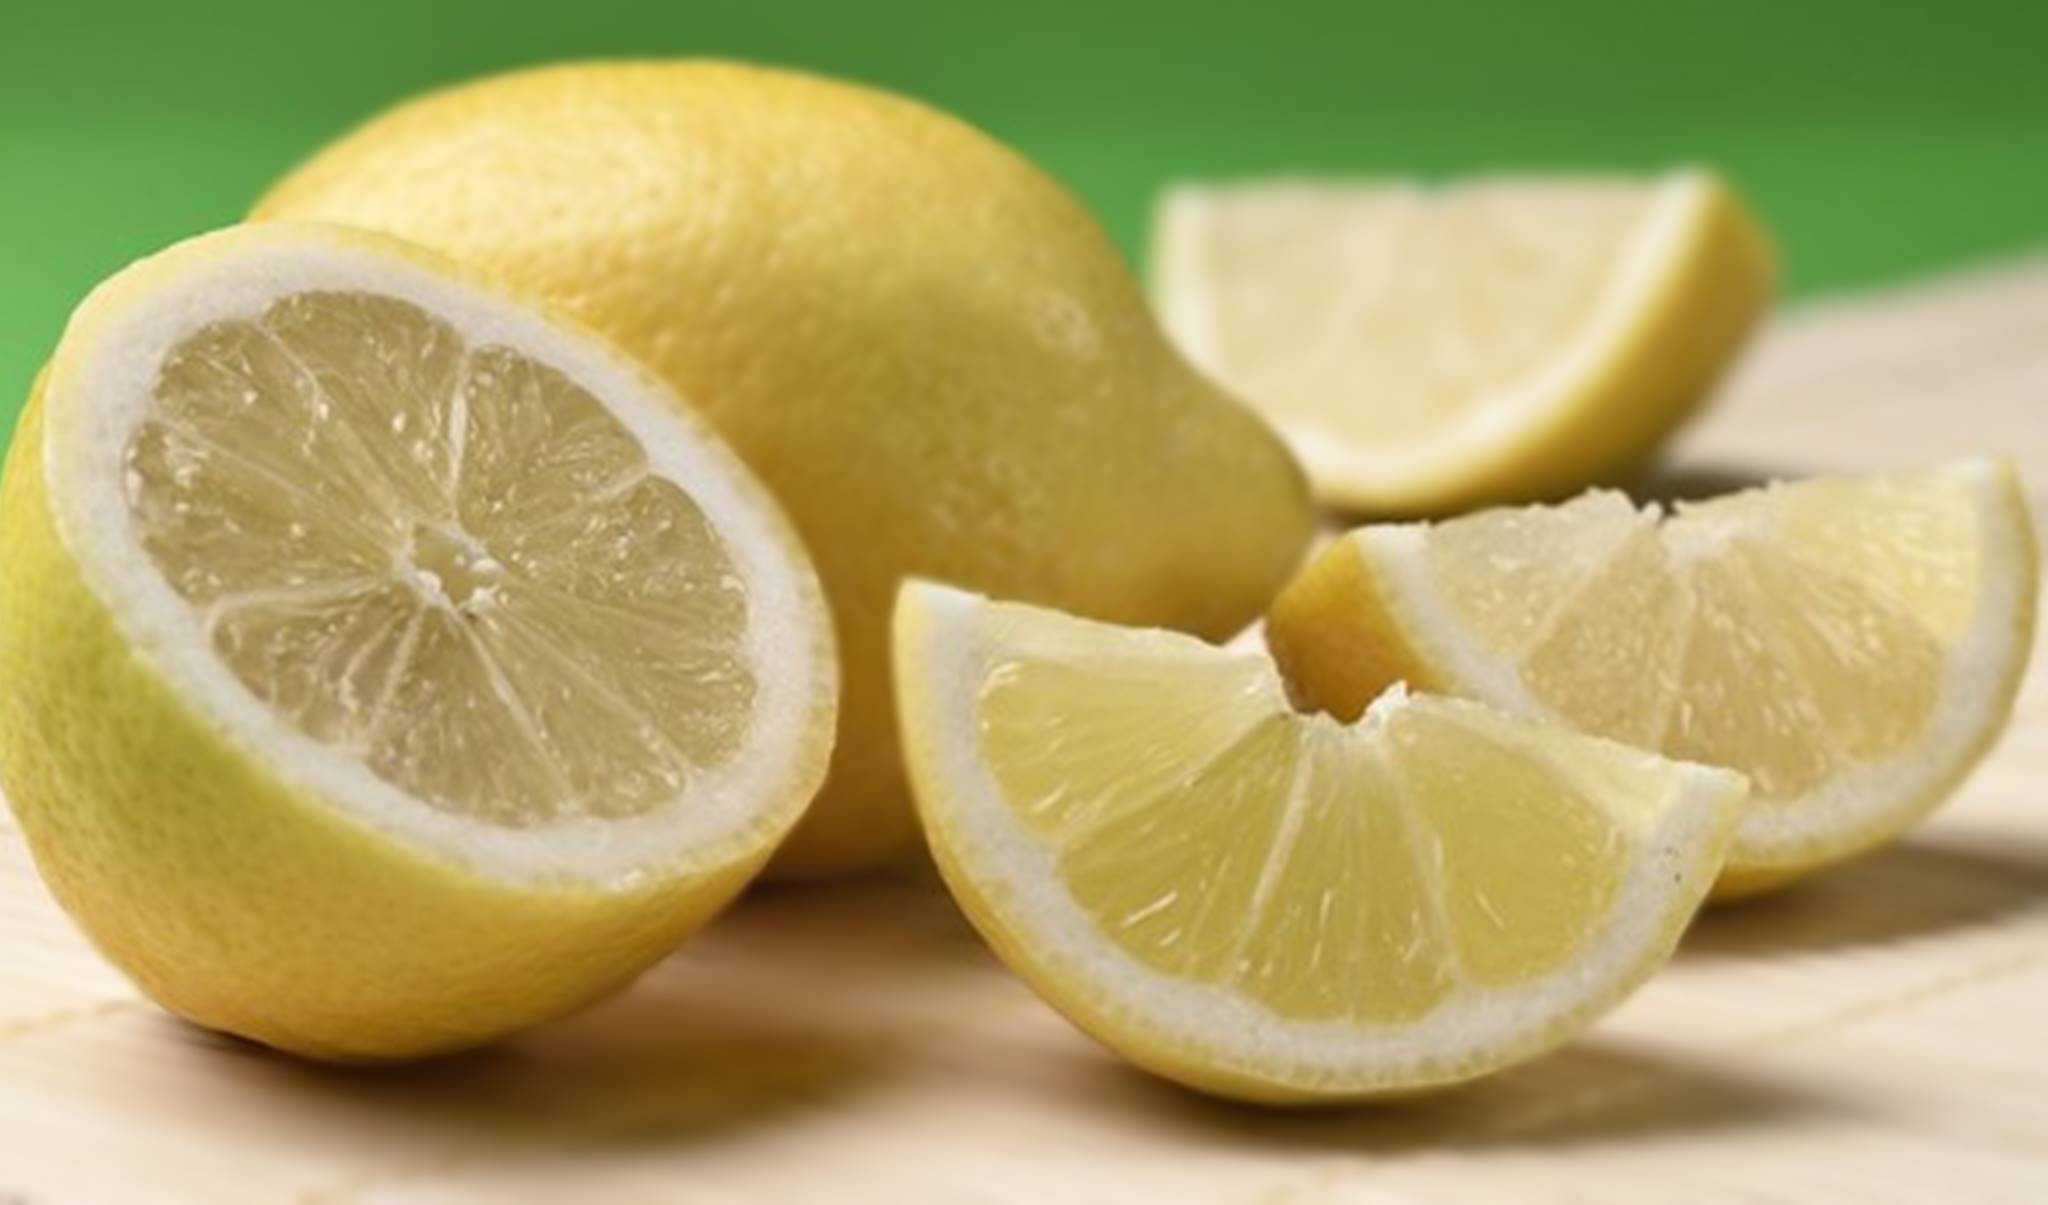 Aprenda a incrível técnica de extrair o suco de um limão sem cortá-lo